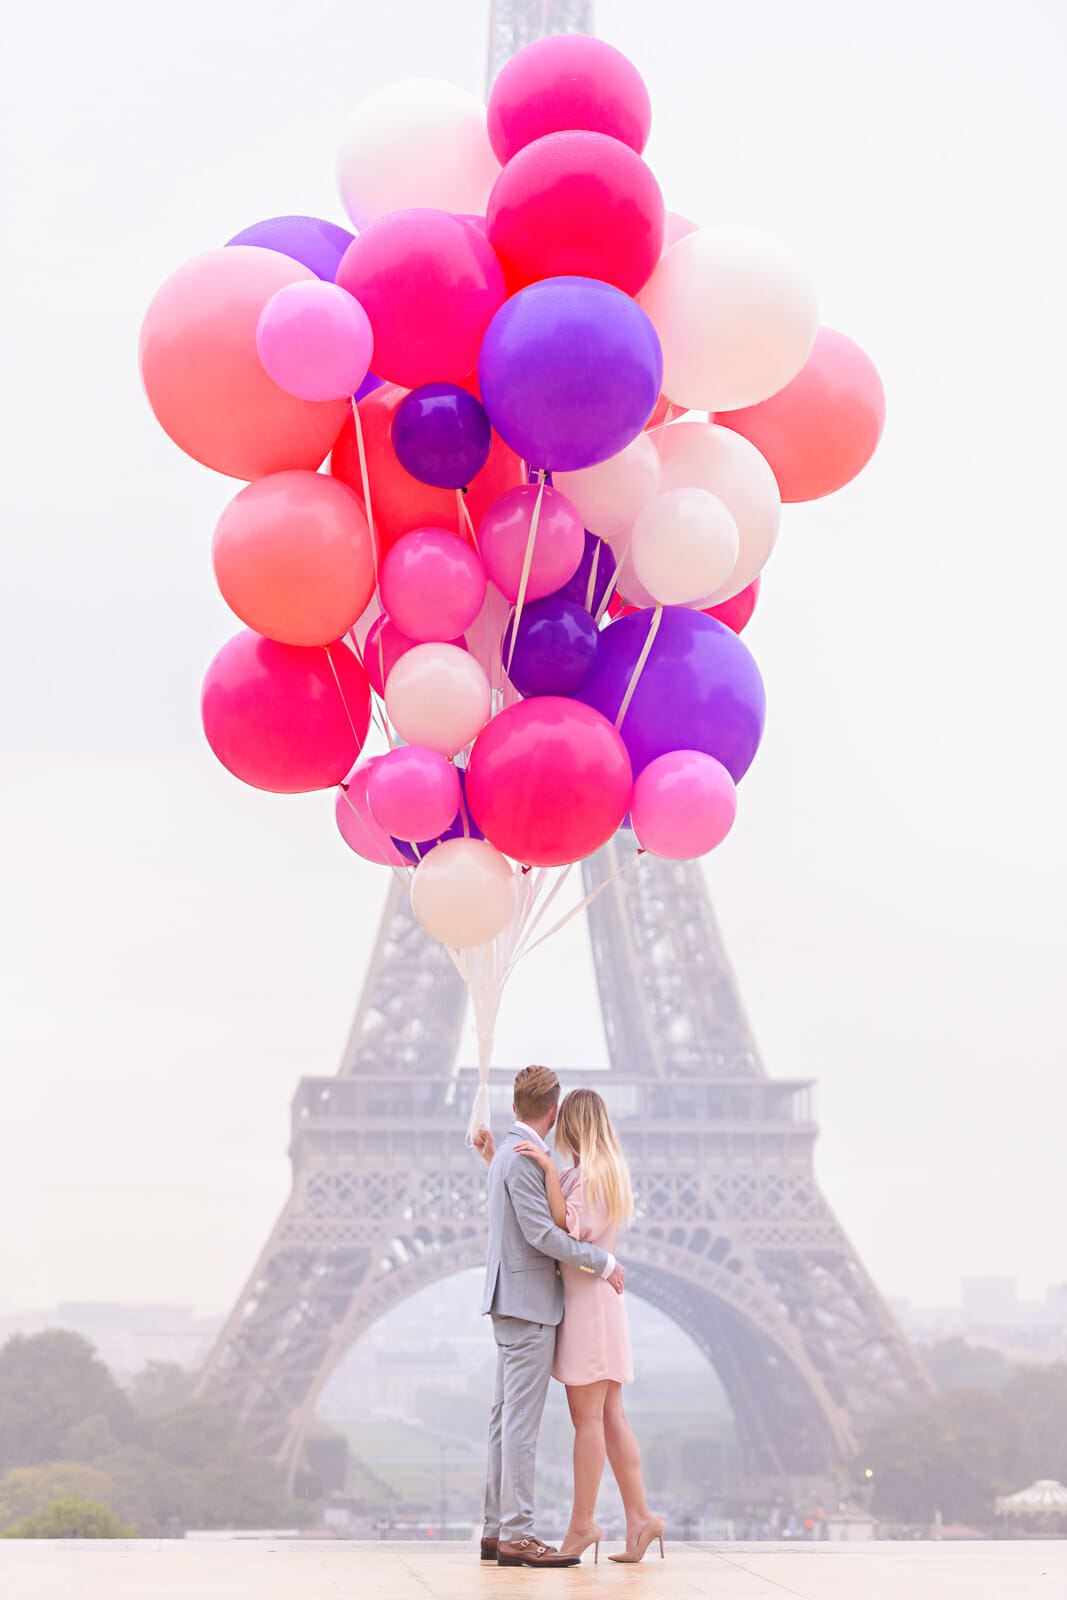 Stunning balloon couple photos Eiffel Tower Trocadero